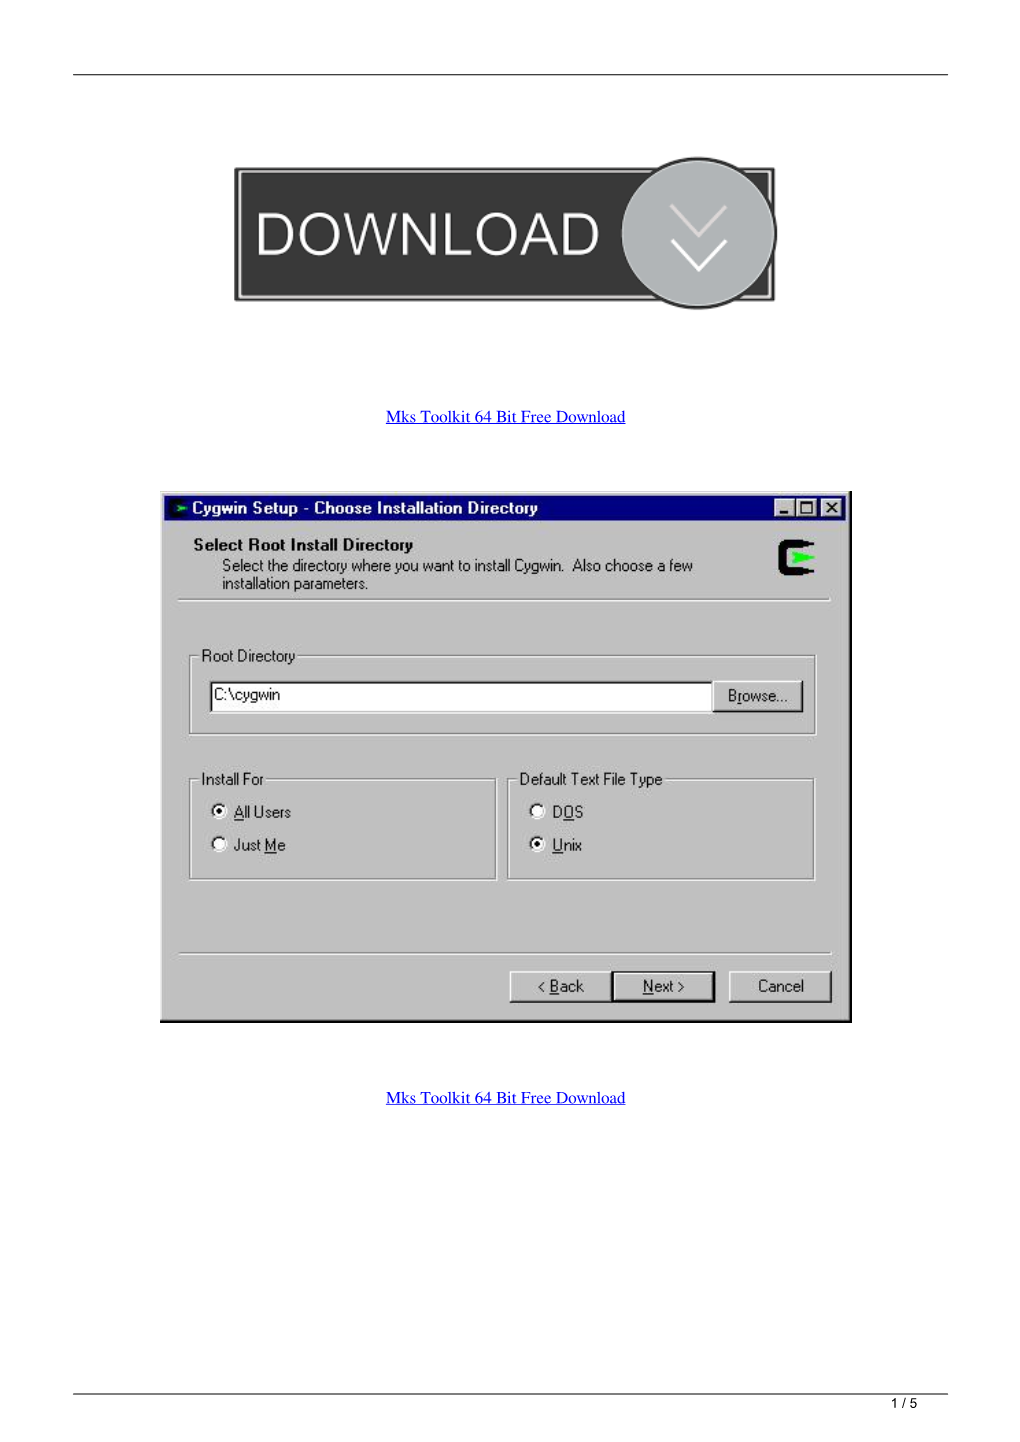 Mks Toolkit 64 Bit Free Download